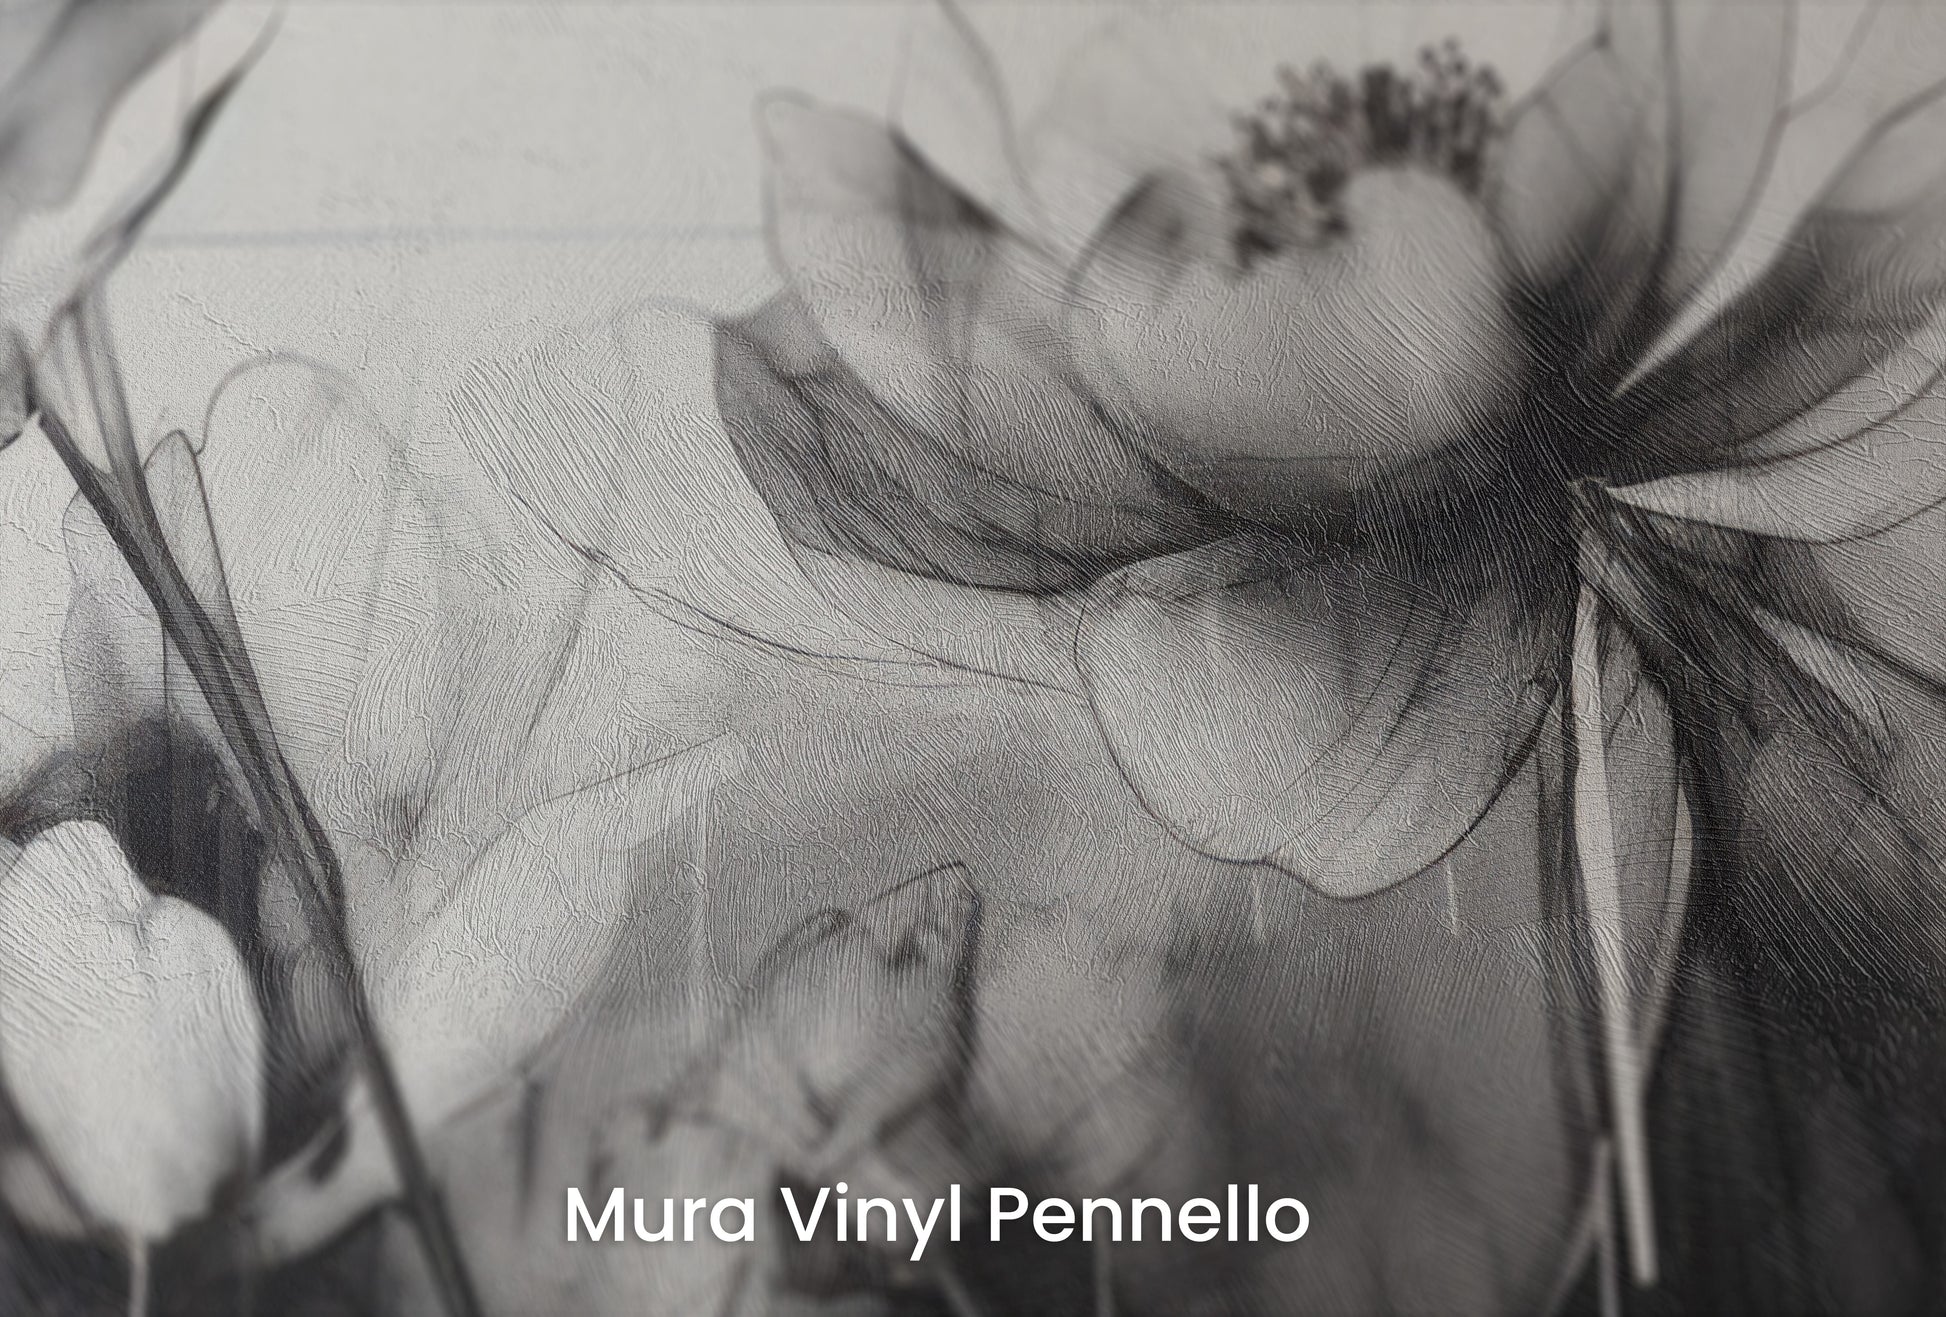 Zbliżenie na artystyczną fototapetę o nazwie GRAPHITE GARDEN GRACE na podłożu Mura Vinyl Pennello - faktura pociągnięć pędzla malarskiego.